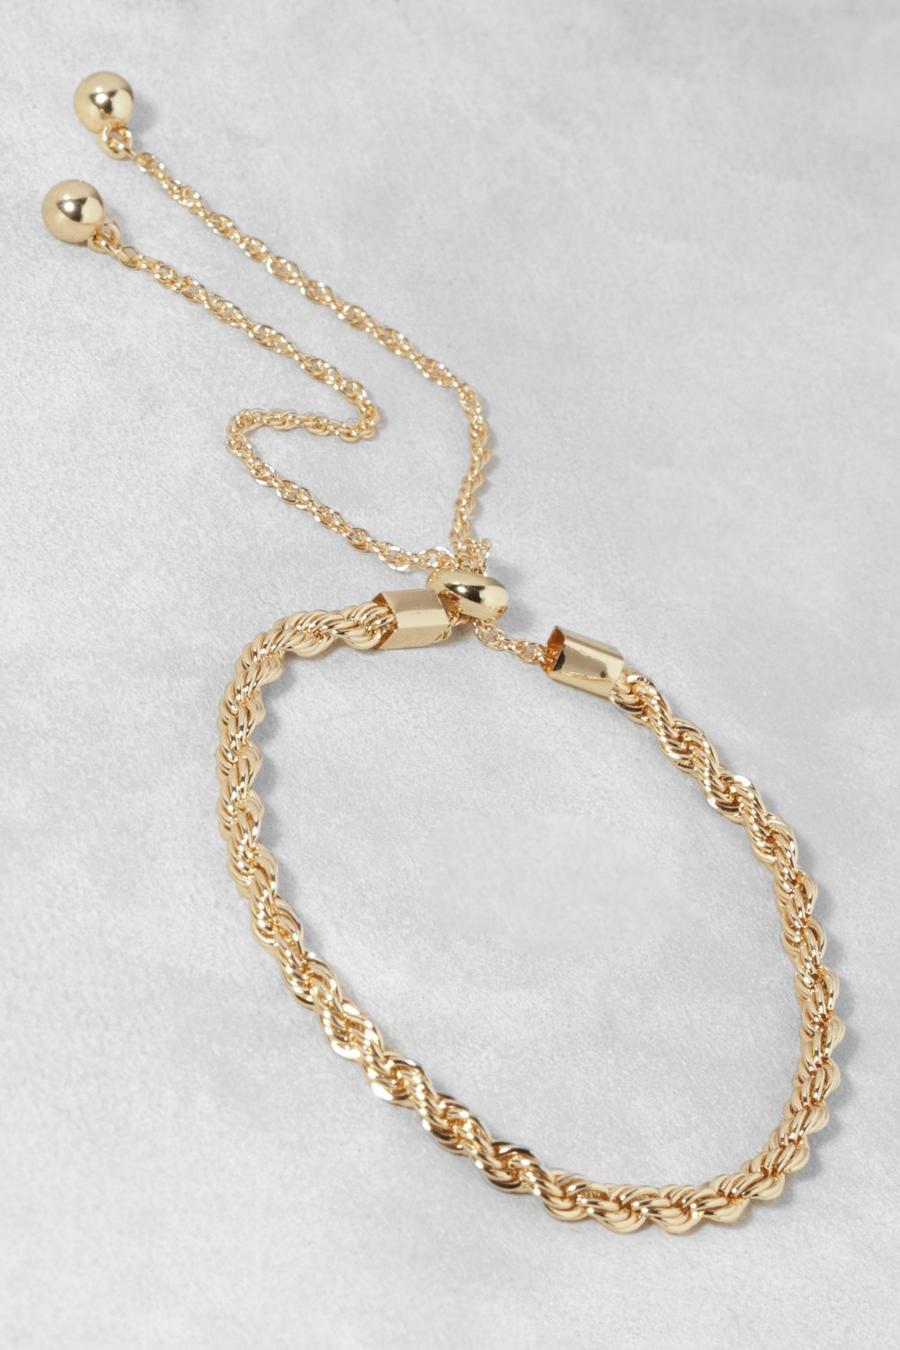 Bralette con alamar, nudo y cuerda pulida, Gold